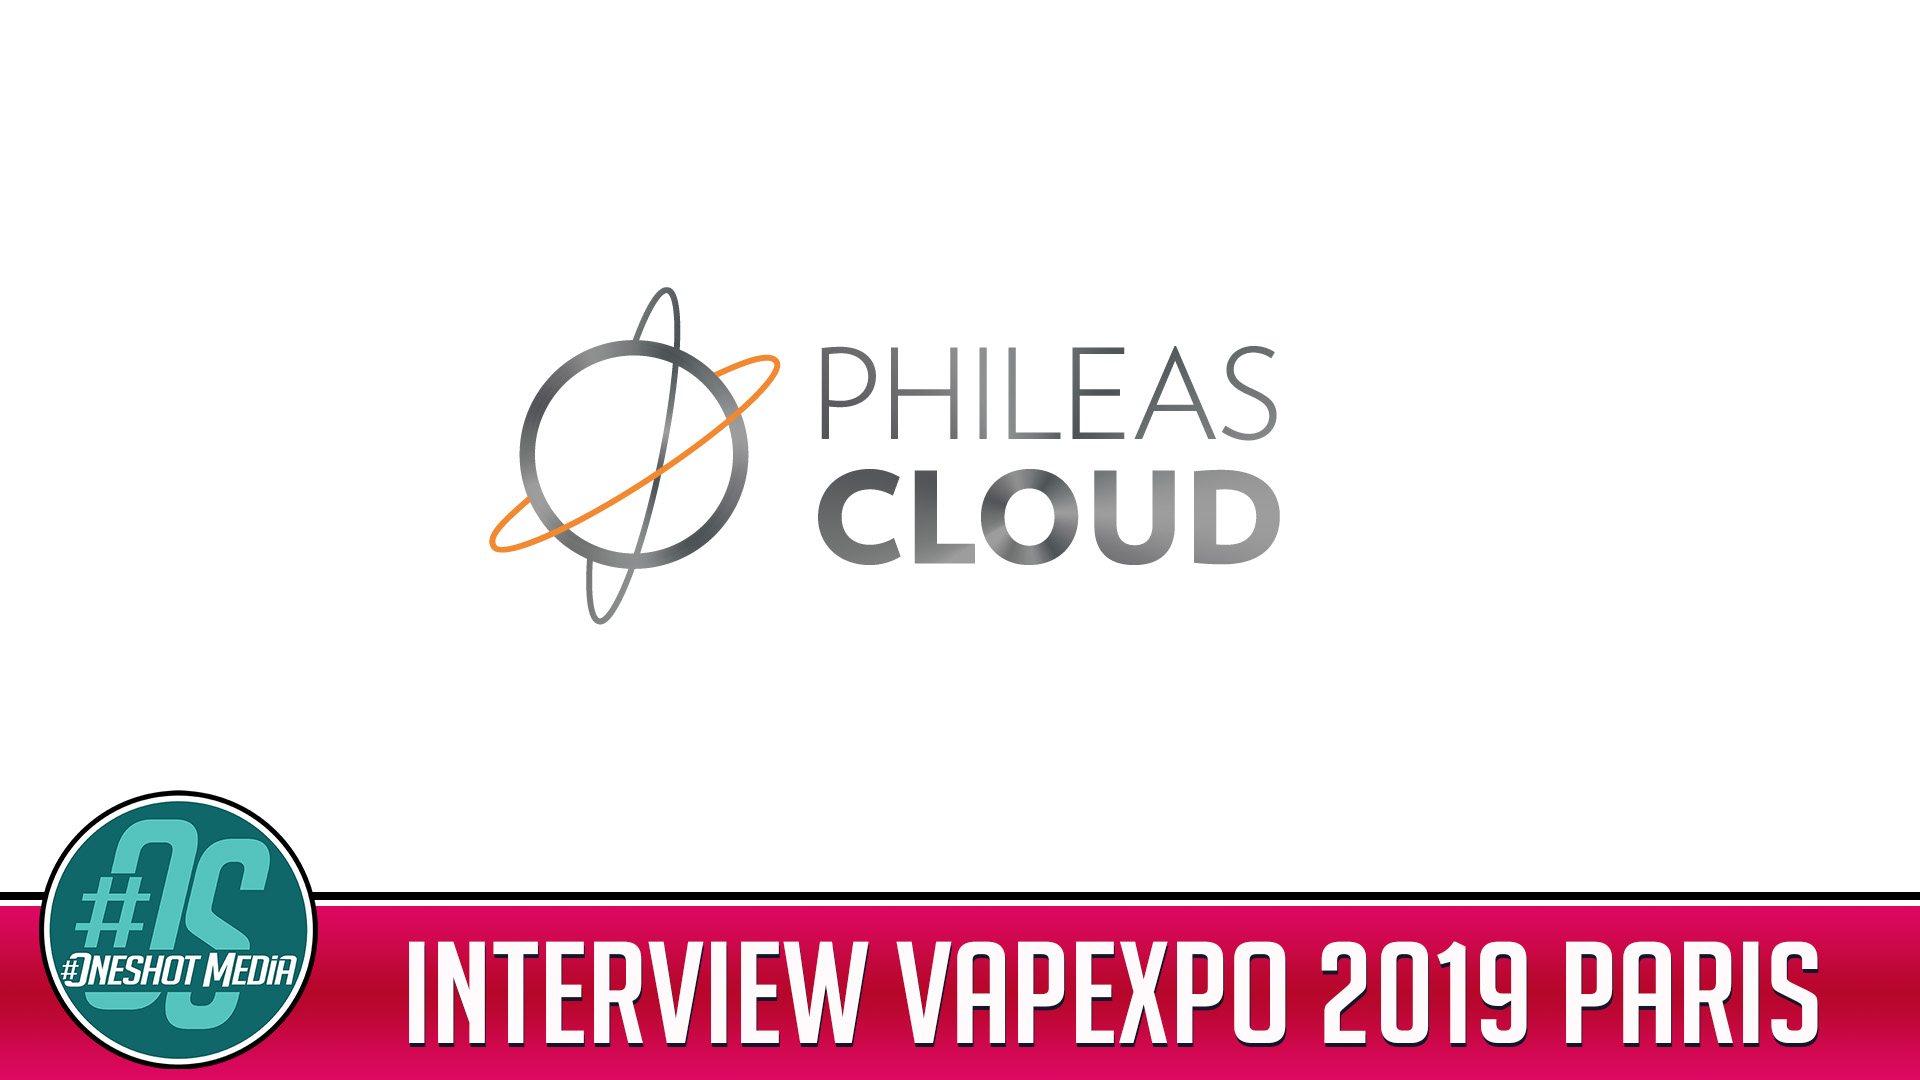 interview phileas cloud vapexpo paris 2019